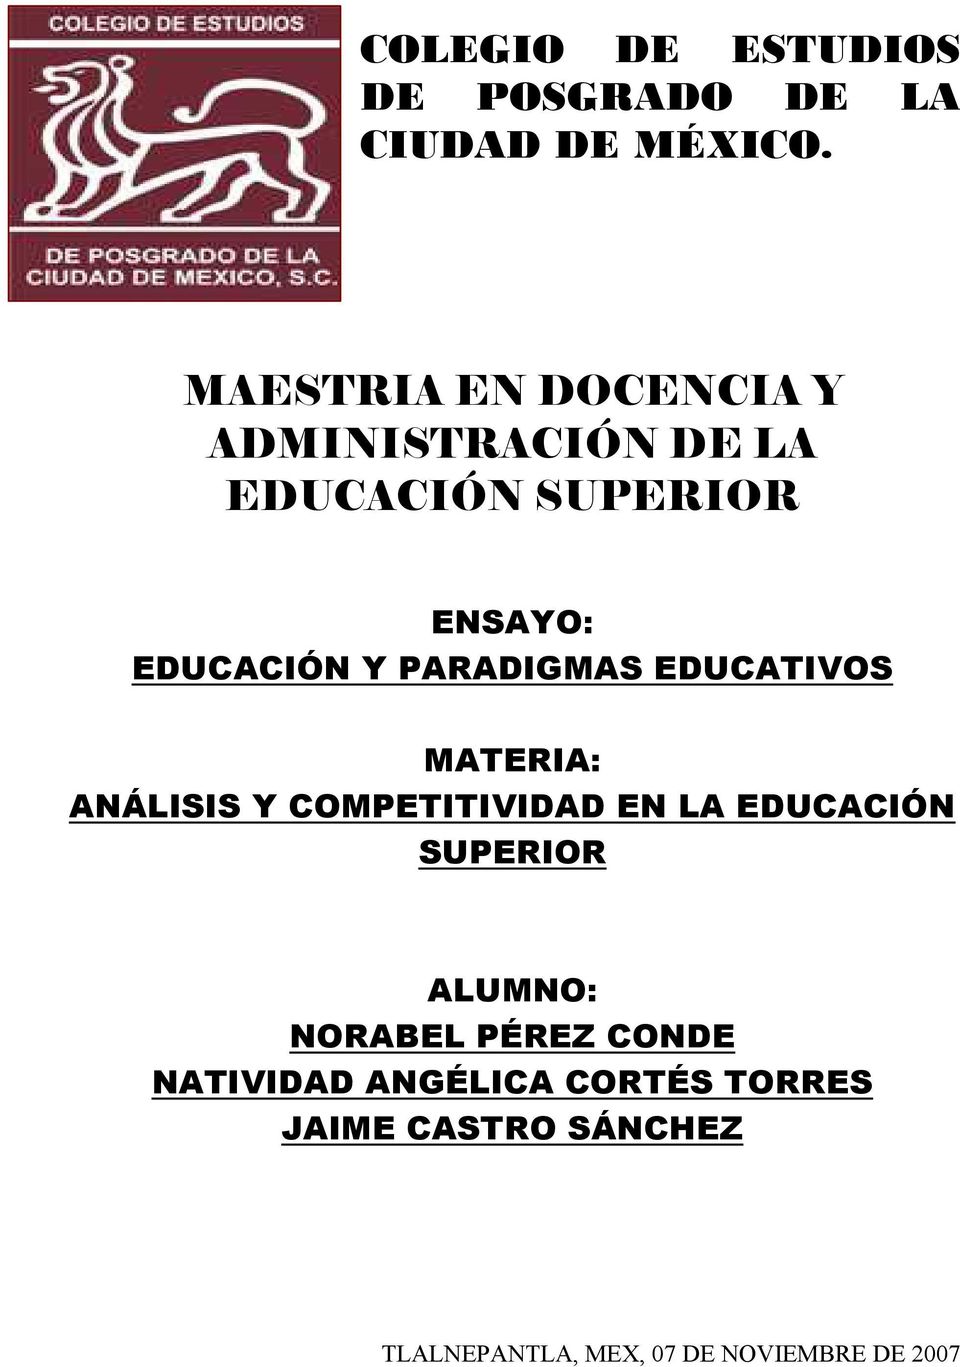 PARADIGMAS EDUCATIVOS MATERIA: ANÁLISIS Y COMPETITIVIDAD EN LA EDUCACIÓN SUPERIOR